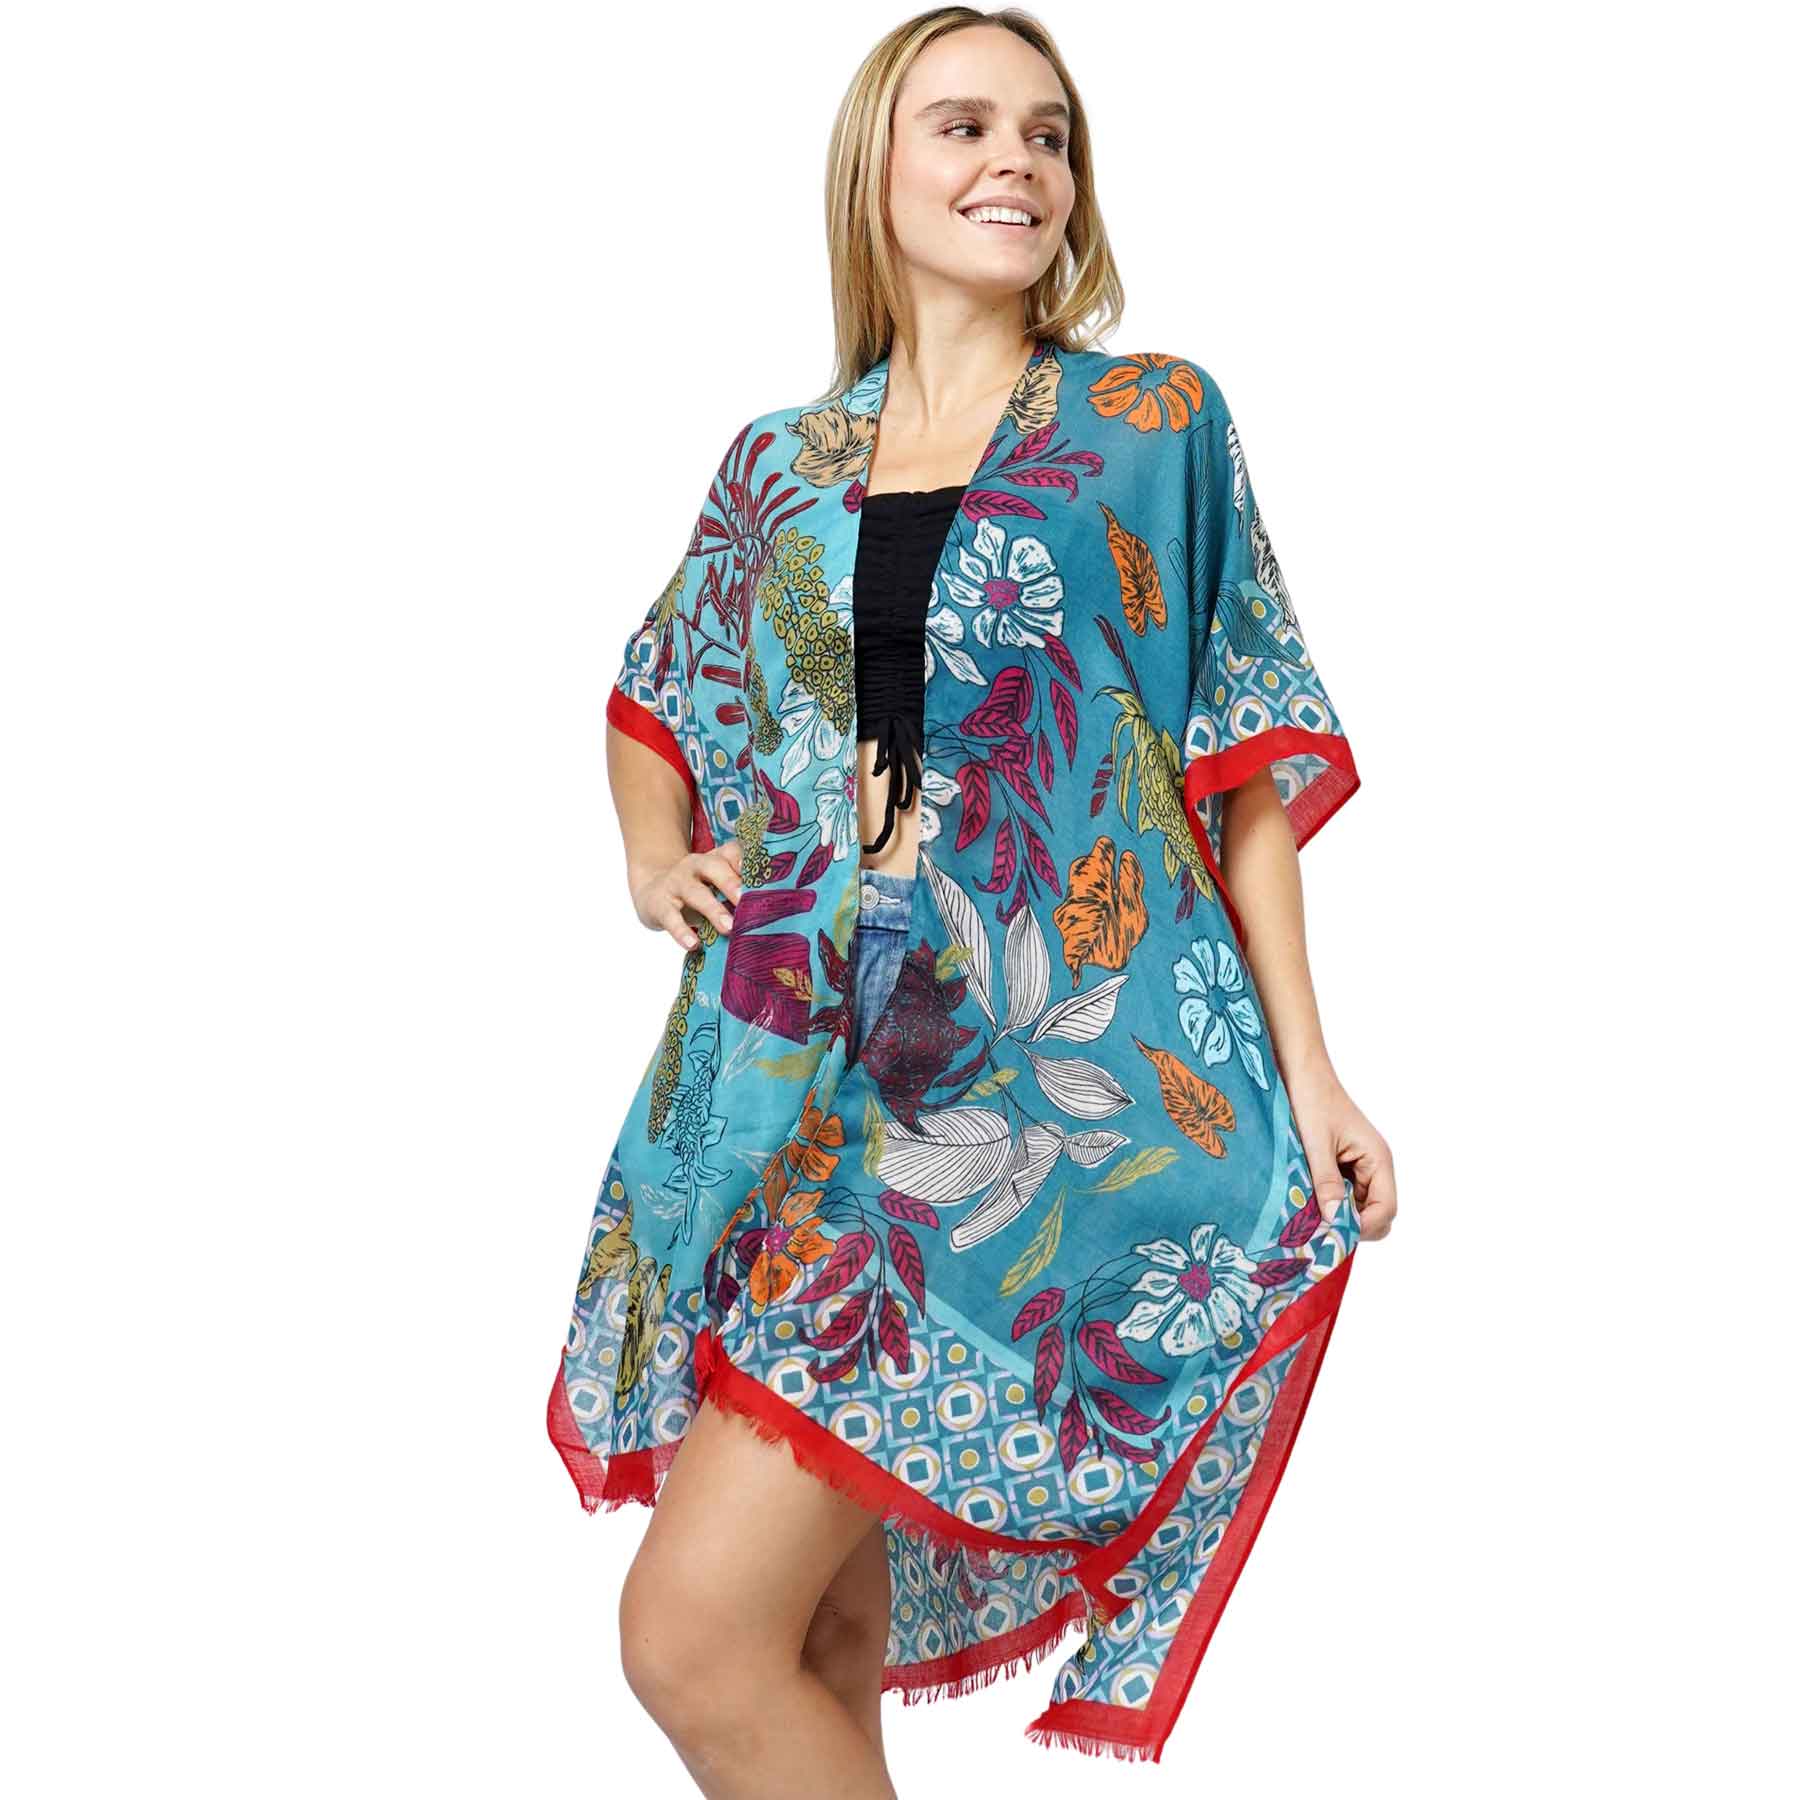 10983 - Teal<br>
Floral Print Kimono